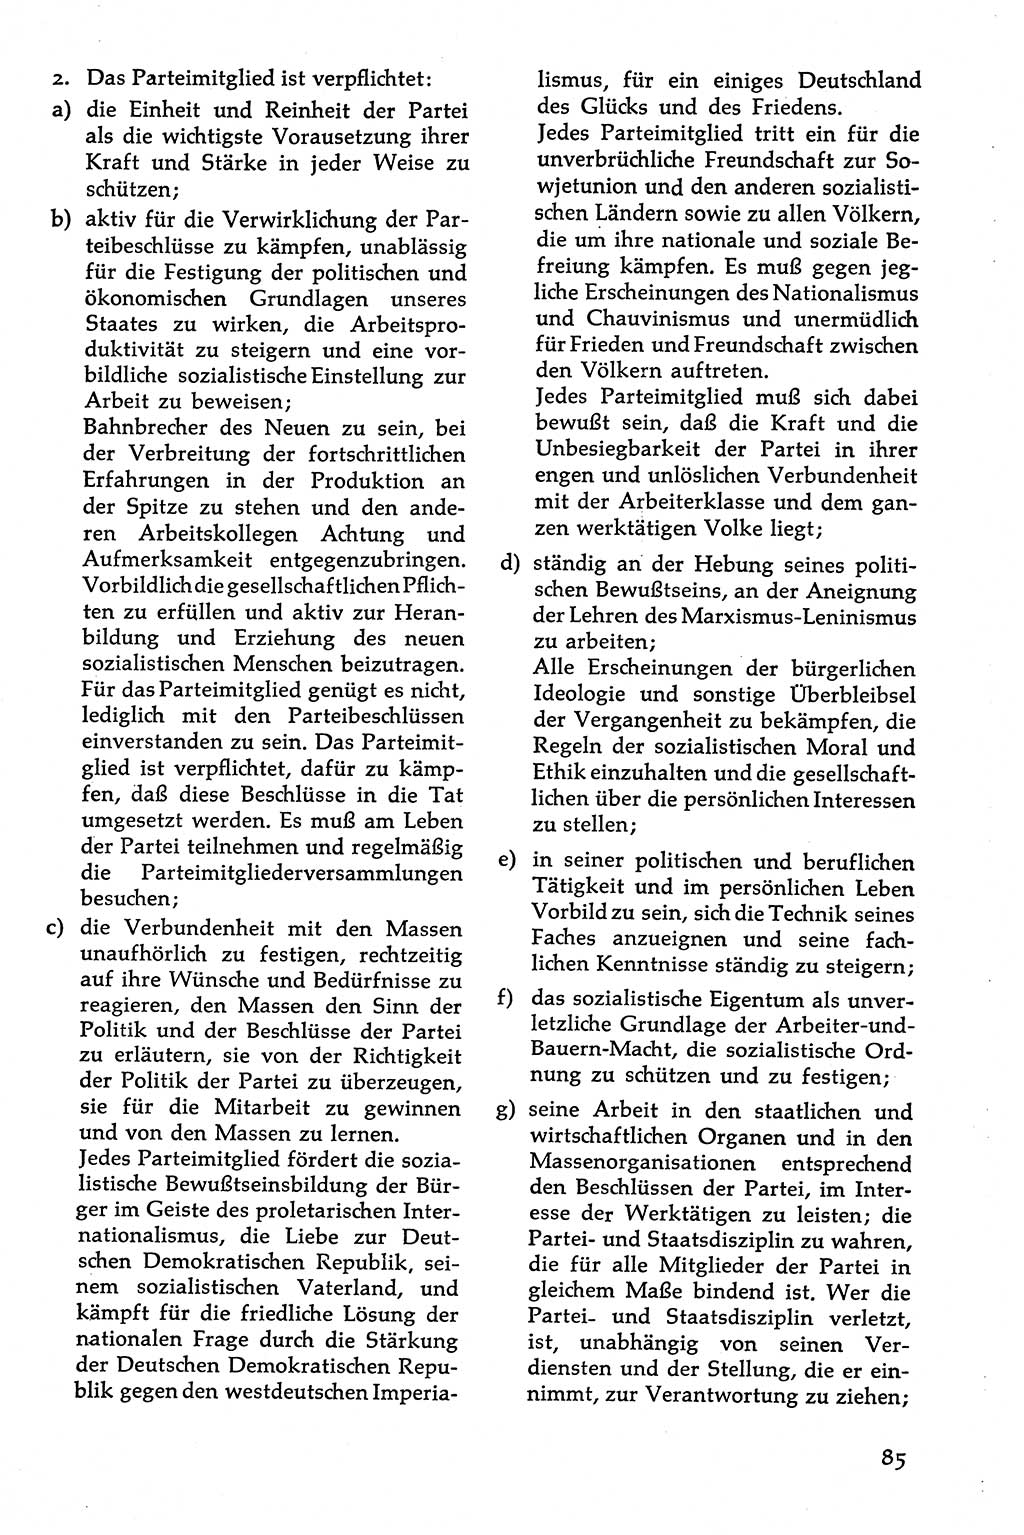 Volksdemokratische Ordnung in Mitteldeutschland [Deutsche Demokratische Republik (DDR)], Texte zur verfassungsrechtlichen Situation 1963, Seite 85 (Volksdem. Ordn. Md. DDR 1963, S. 85)